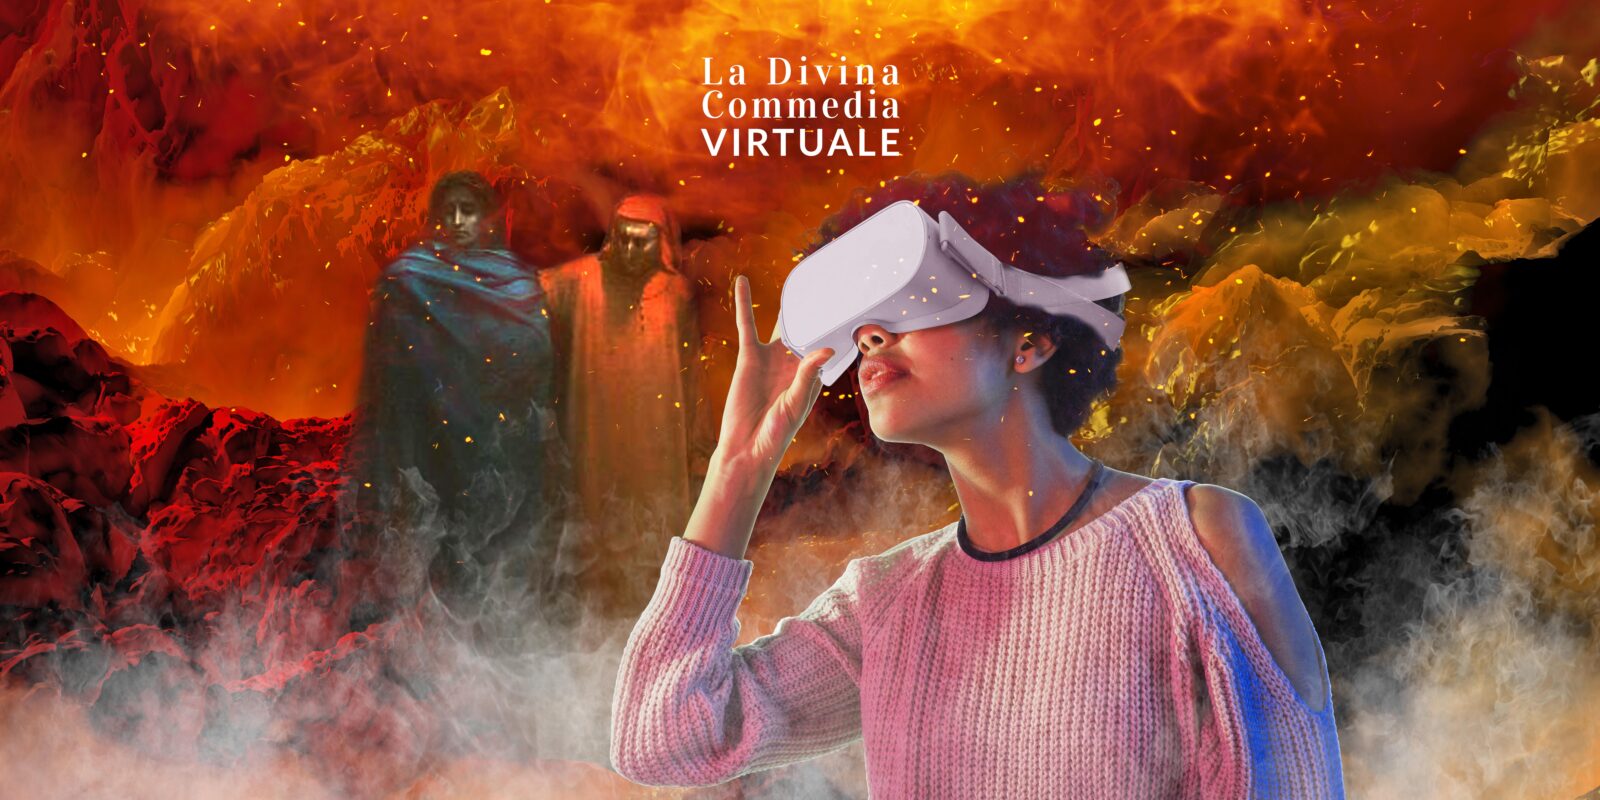 Locandina de La divina commedia VR: l'Inferno, un viaggio immersivo con ragazza con visor ein primo piano e dante e virgilio sullo sfondo